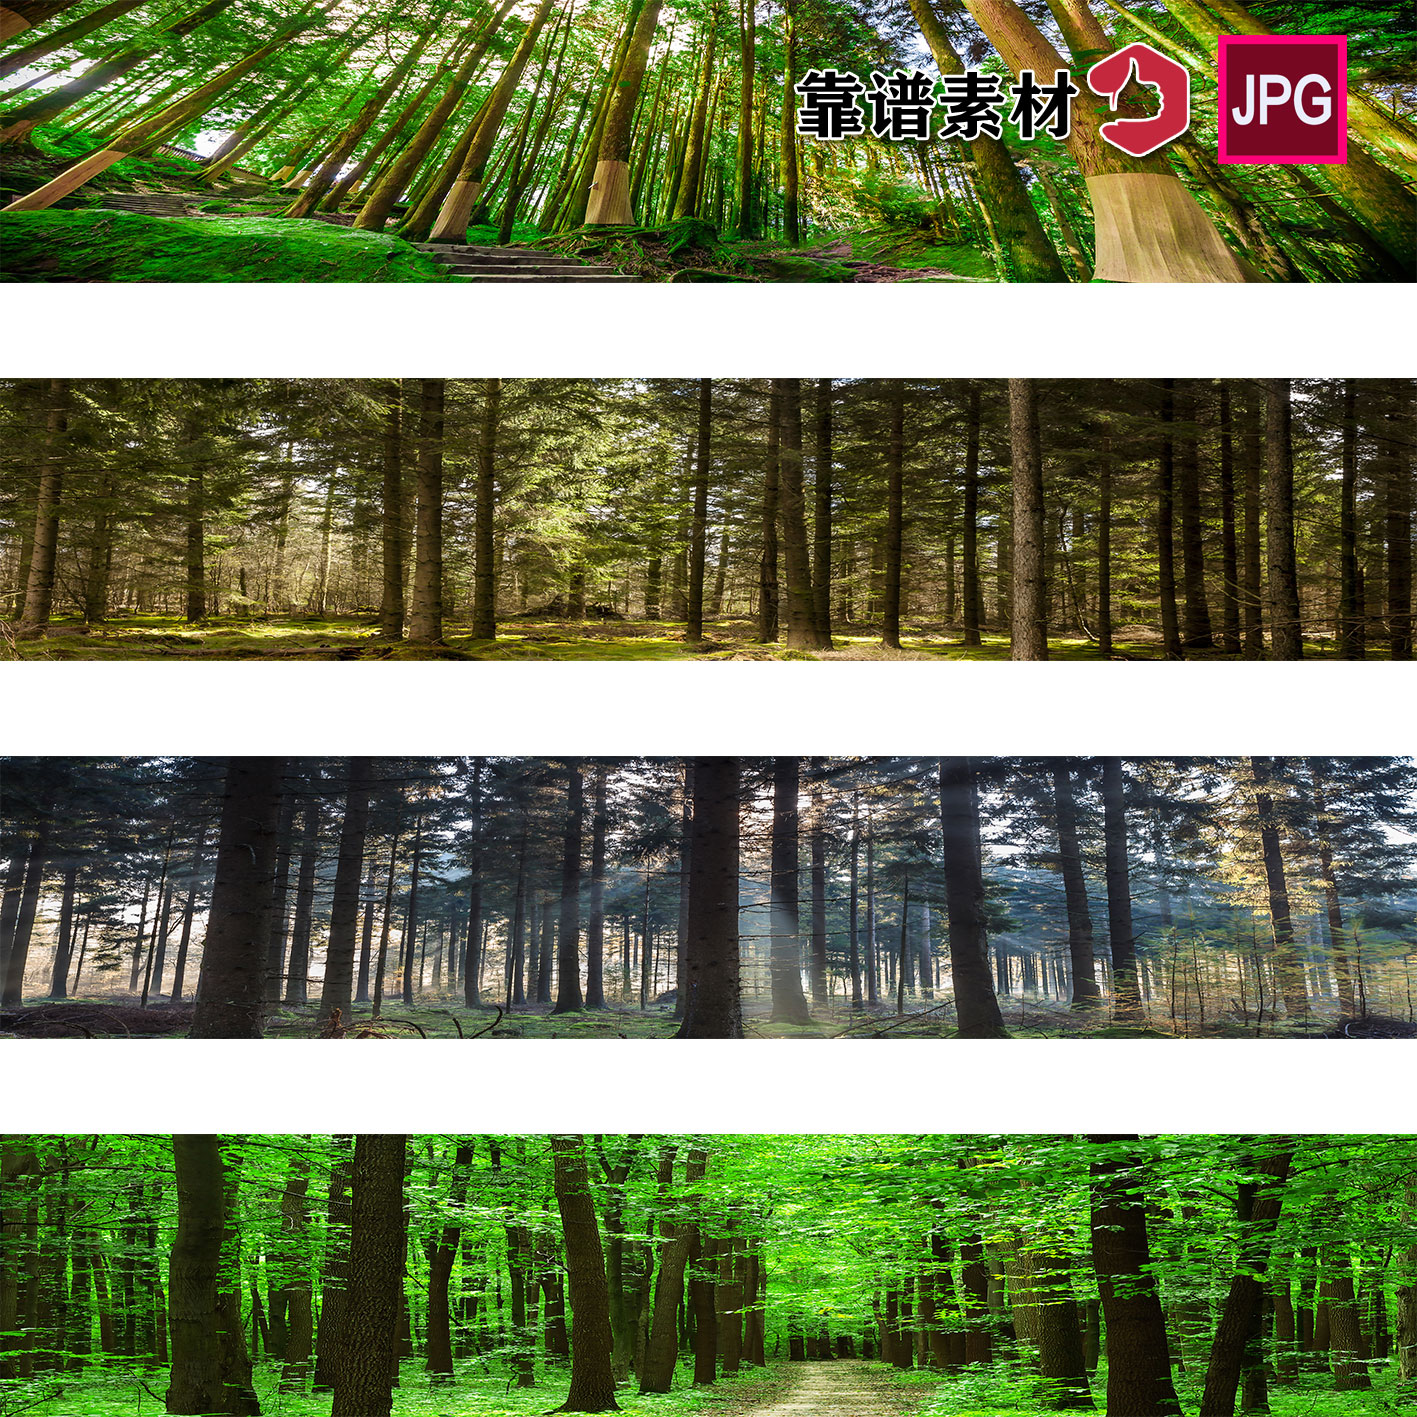 长景图绿色树林森林阳光照射风景装饰画高清背景图片设计素材